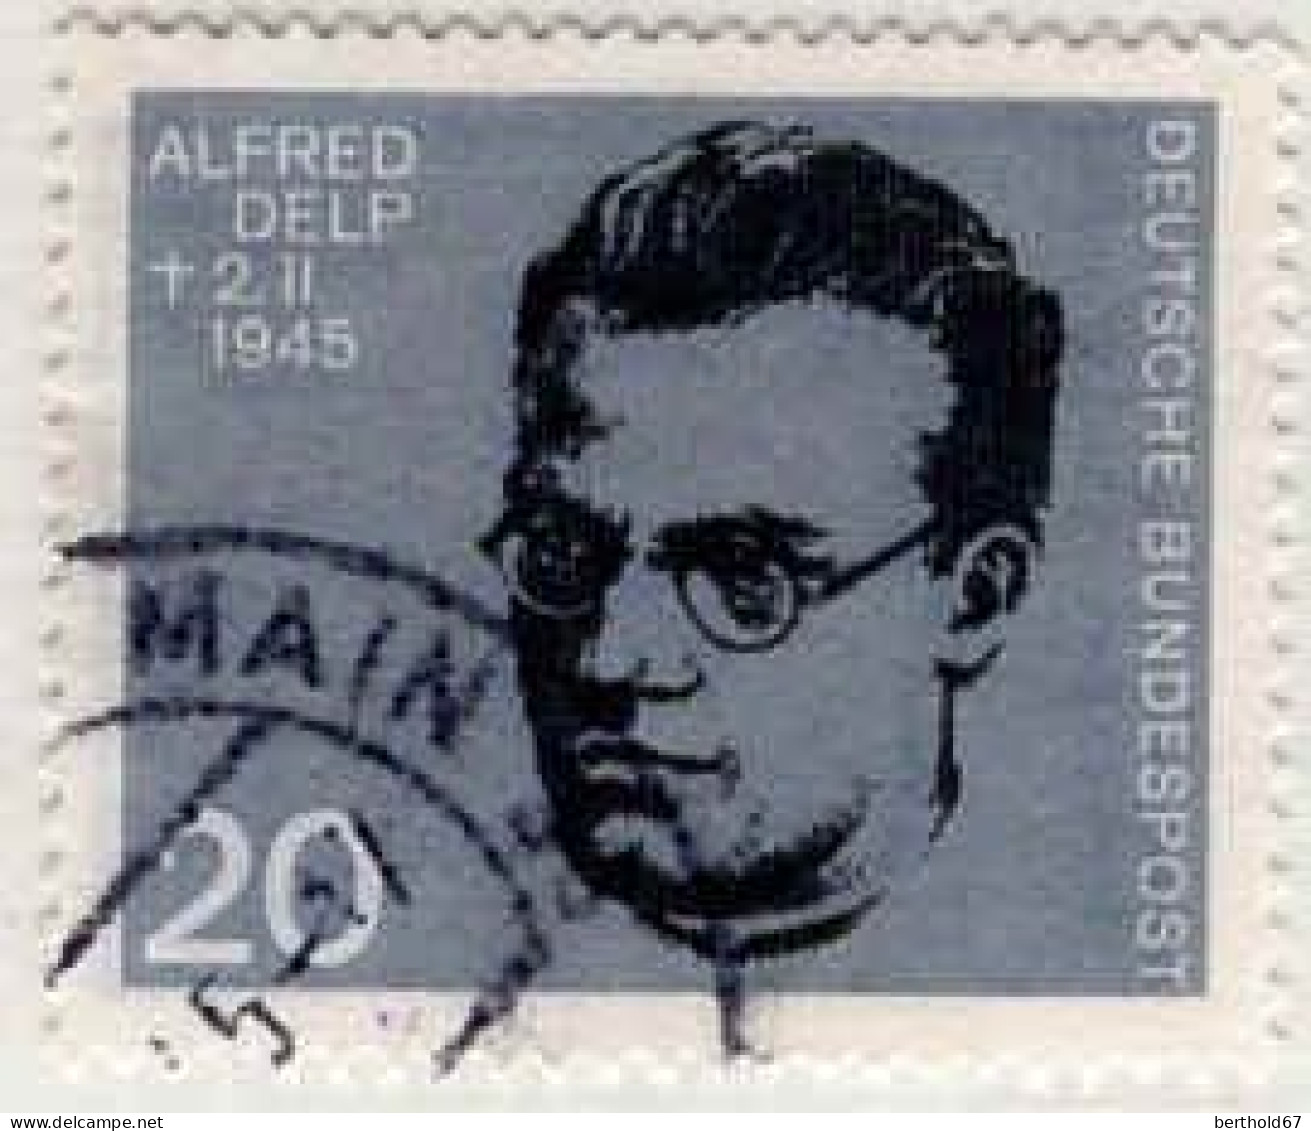 RFA Poste Obl Yv: 297/304 20.Anniversaire De L'Attentat Du 20-7-1944 Contre Hitler - Used Stamps